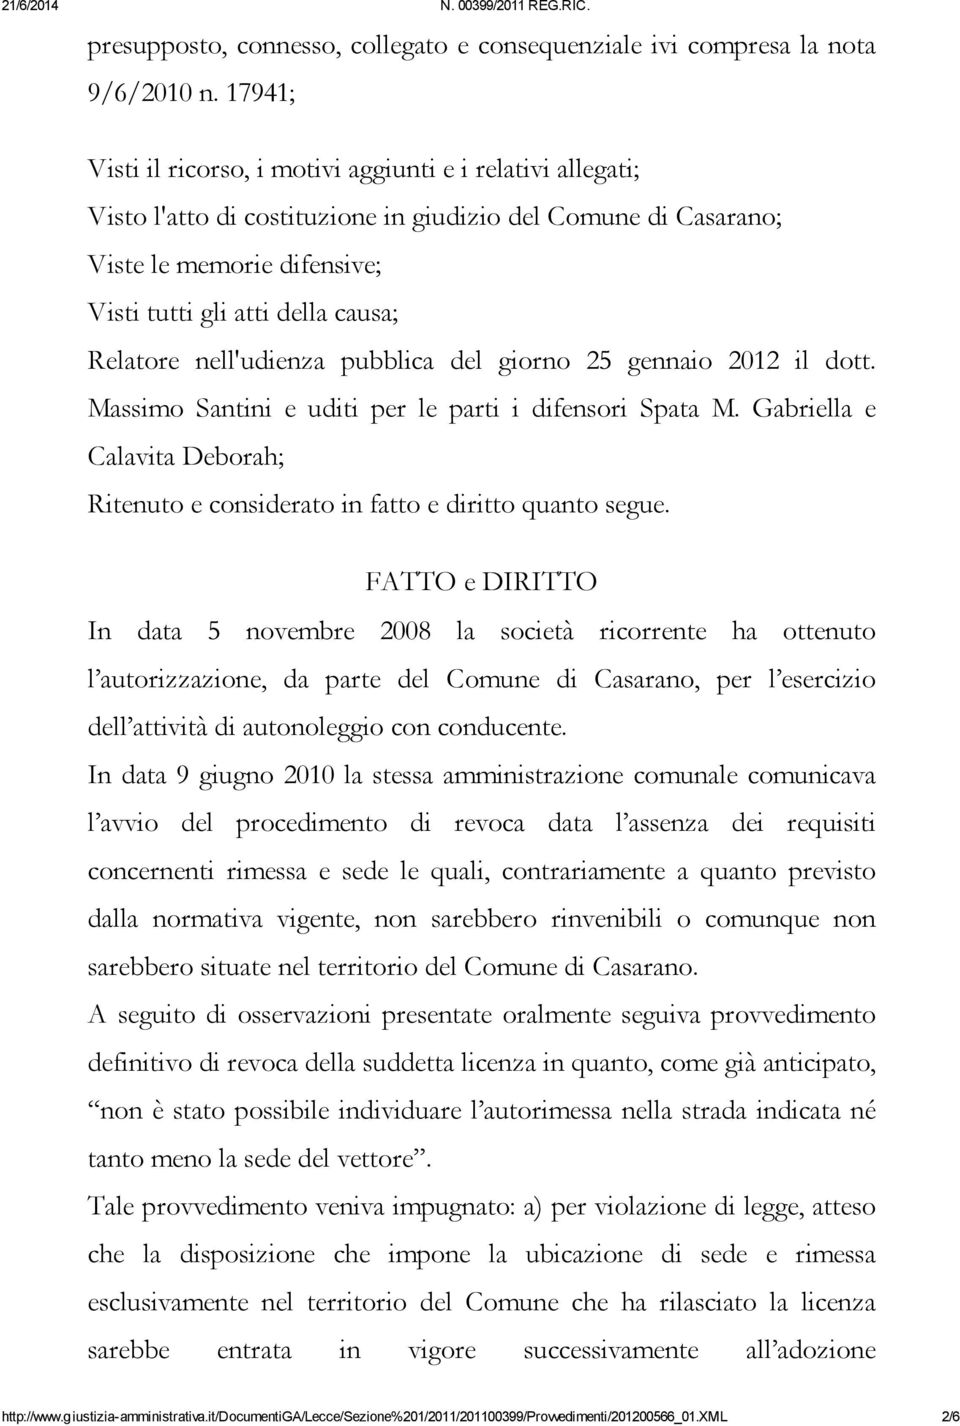 Relatore nell'udienza pubblica del giorno 25 gennaio 2012 il dott. Massimo Santini e uditi per le parti i difensori Spata M.